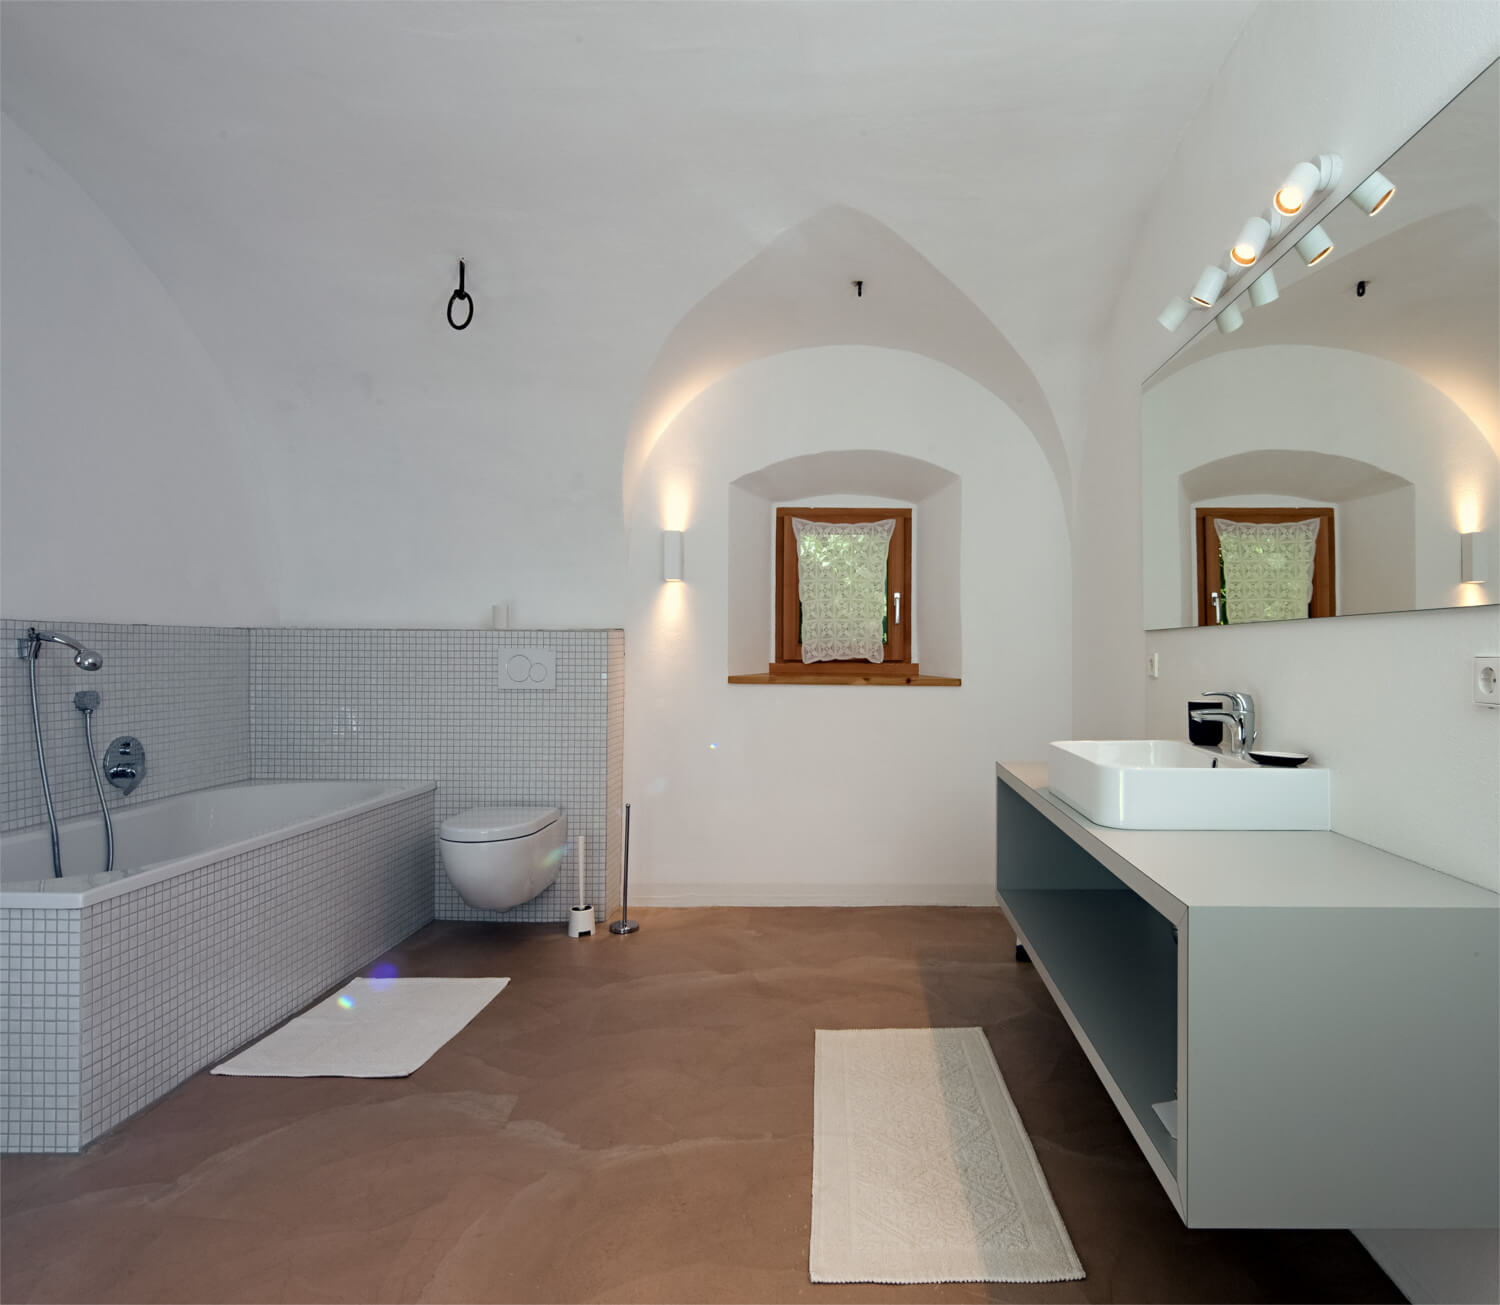 Ferienhaus Maar1 am Goldberg - großes Badezimmer mit Badewanne, Dusche im historischen Kreuzgewölbe